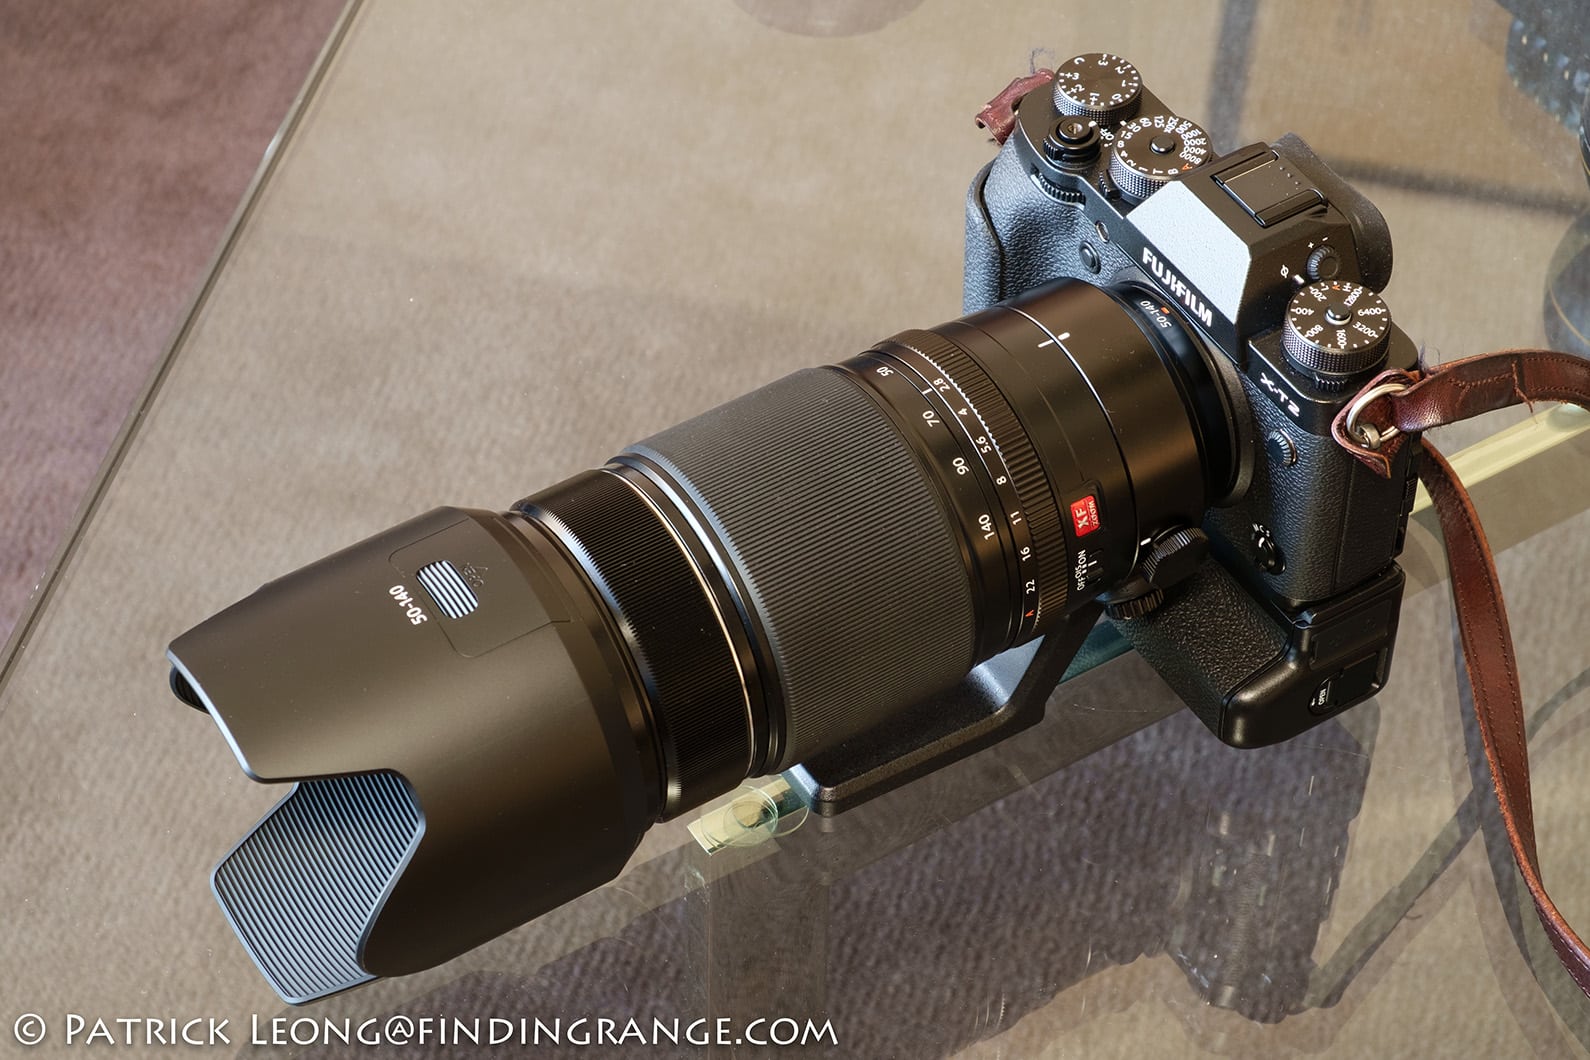 Ống kính Fujifilm XF 50-140mm F2.8 R LM OIS WR